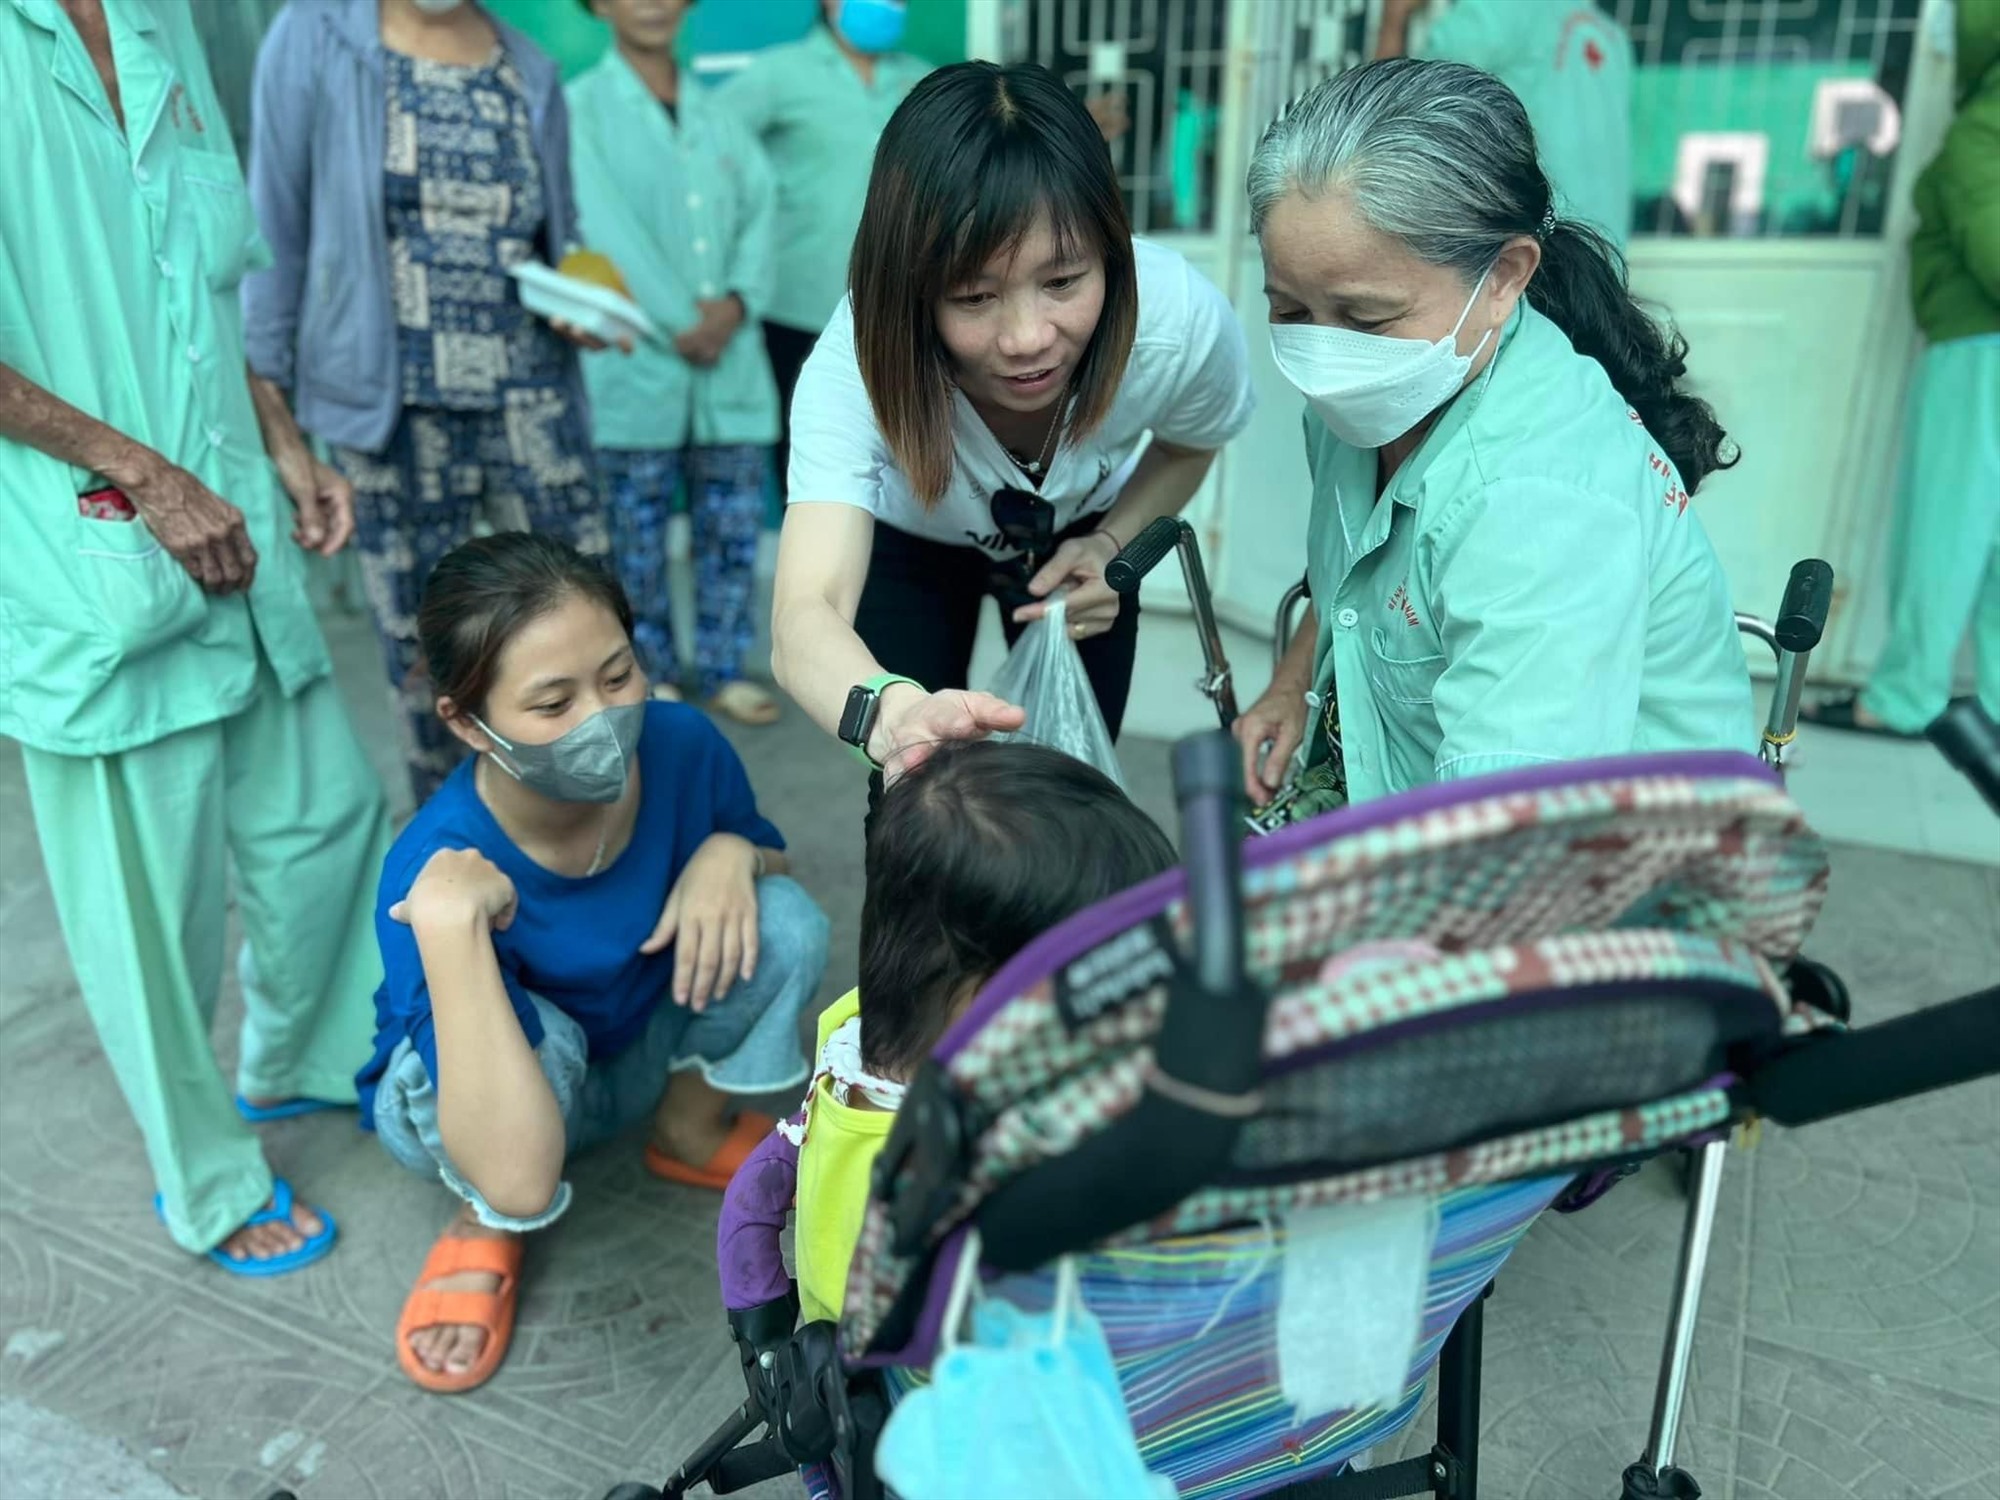 Thuỳ Trang phát các suất cơm miễn phí tại Bệnh viện Đa khoa khu vực miền núi phía bắc Quảng Nam. Ảnh: Facebook nhân vật